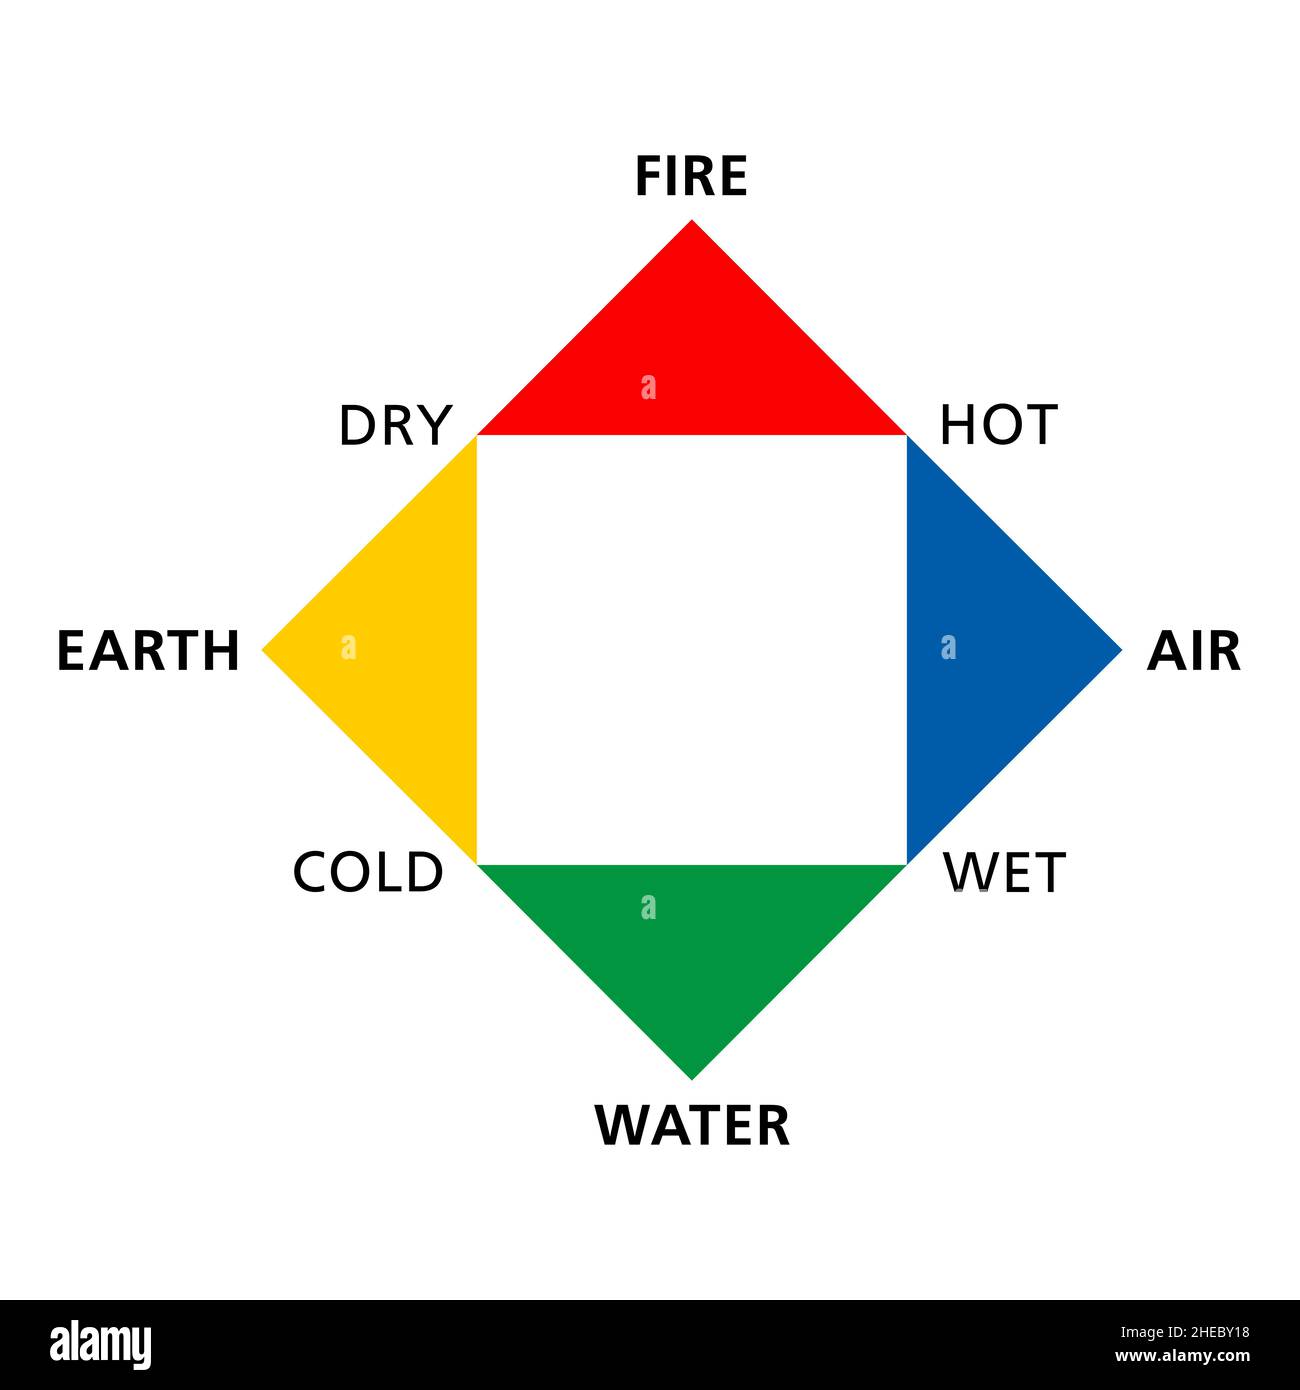 Farbige, klassische vier Elemente Feuer, Erde, Wasser und Luft, mit ihren Qualitäten heiß, trocken, kalt und nass. Stockfoto